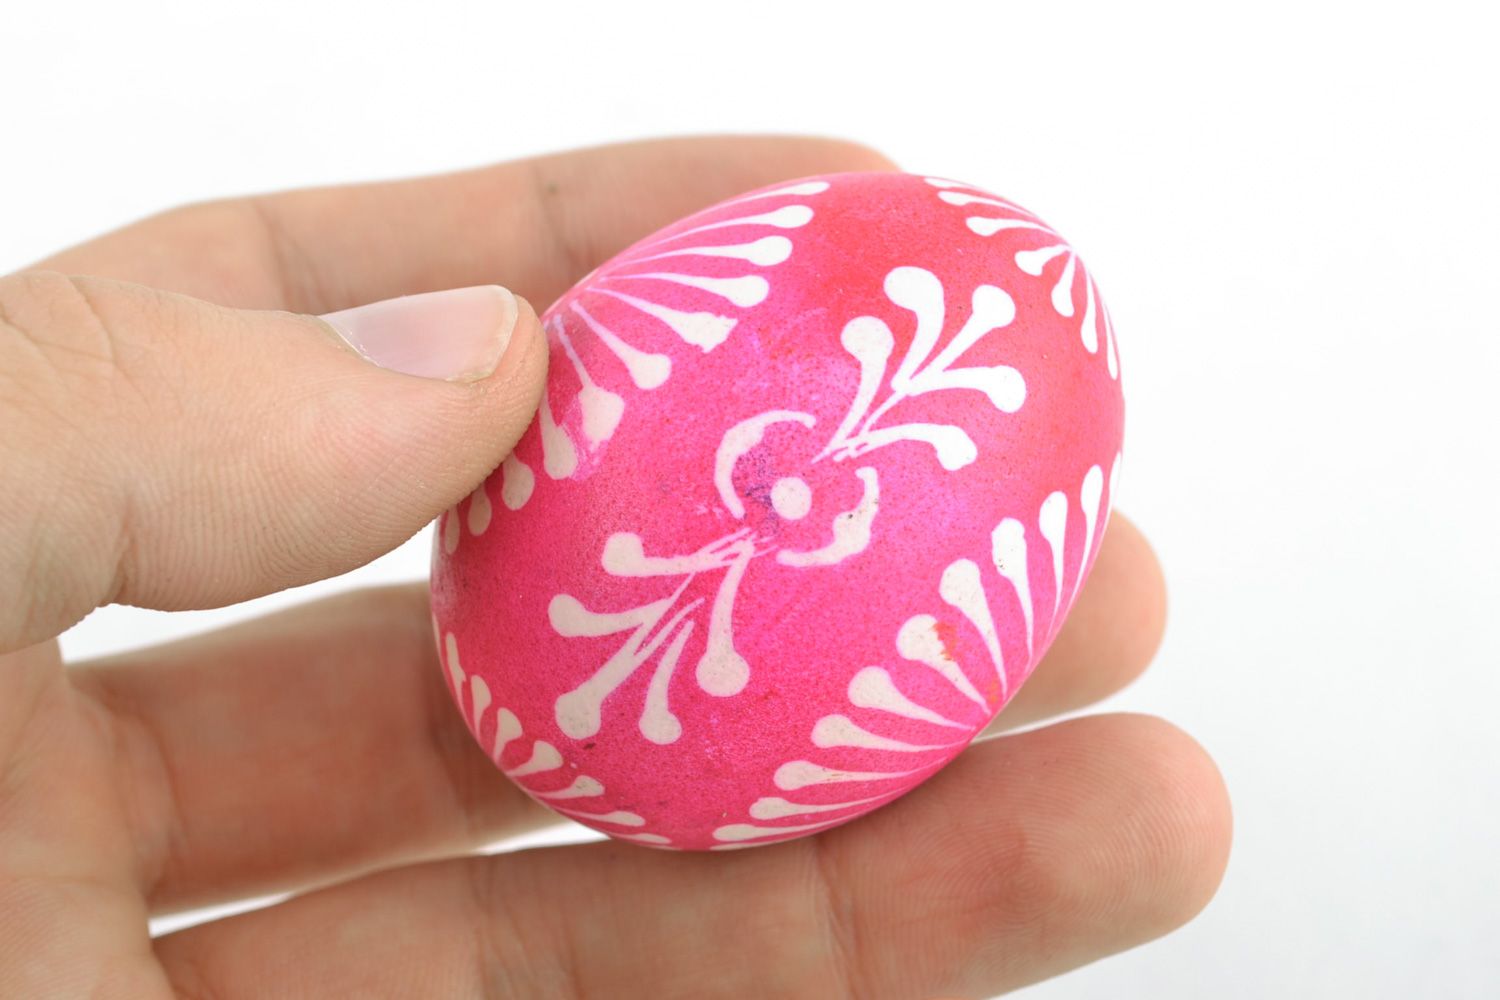 Oeuf de Pâques peint de colorants d'aniline fait main rose avec ornements photo 2